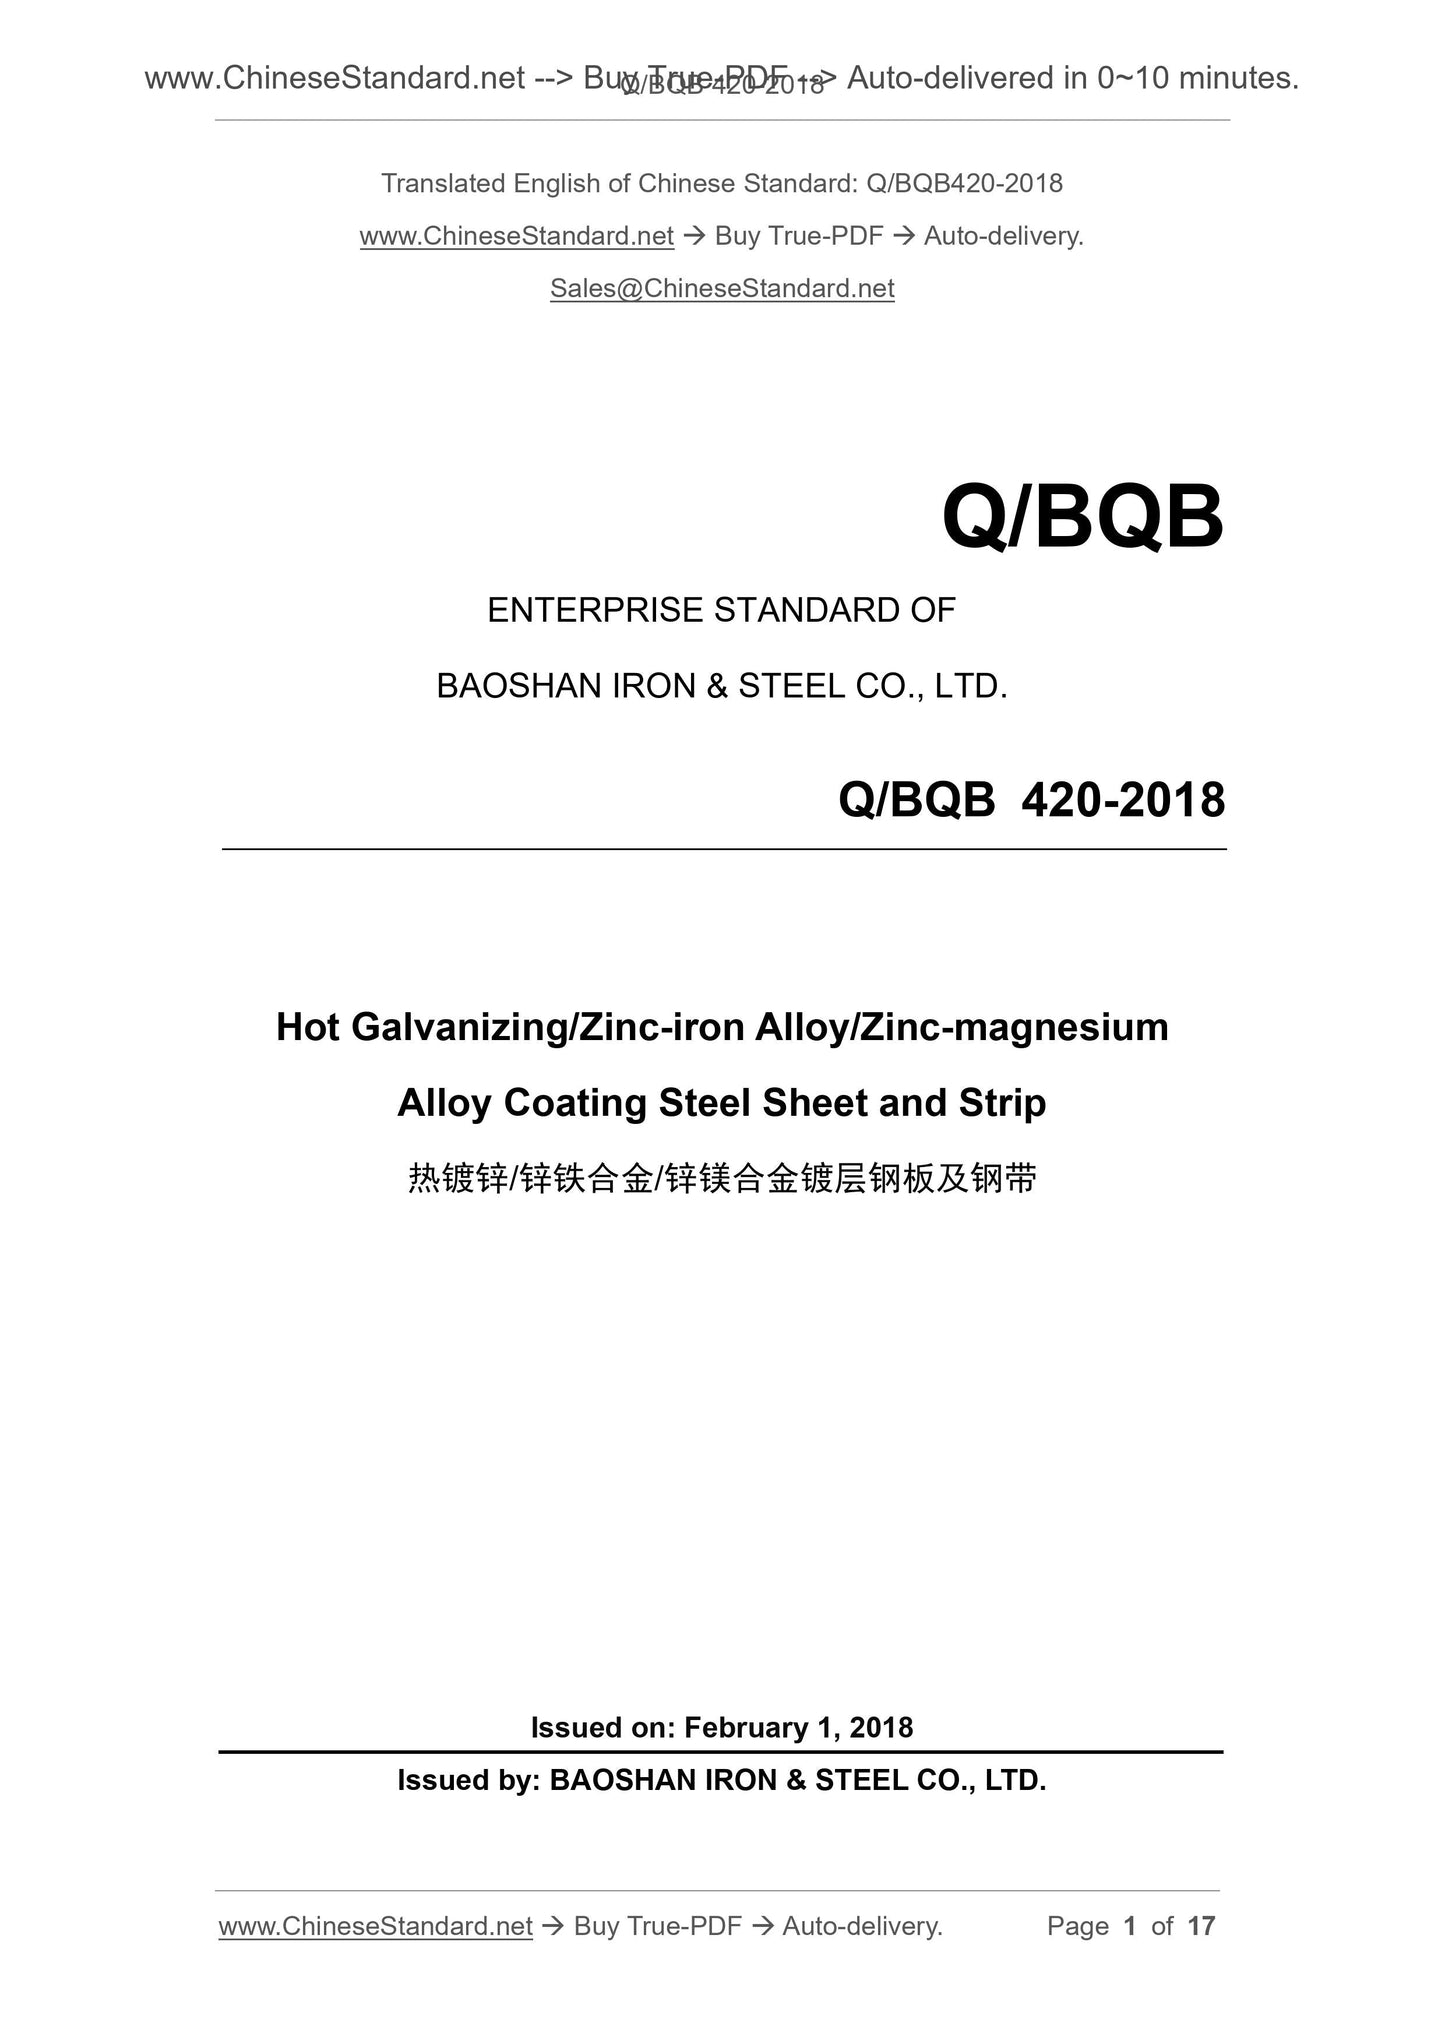 Q/BQB 420-2018 Page 1